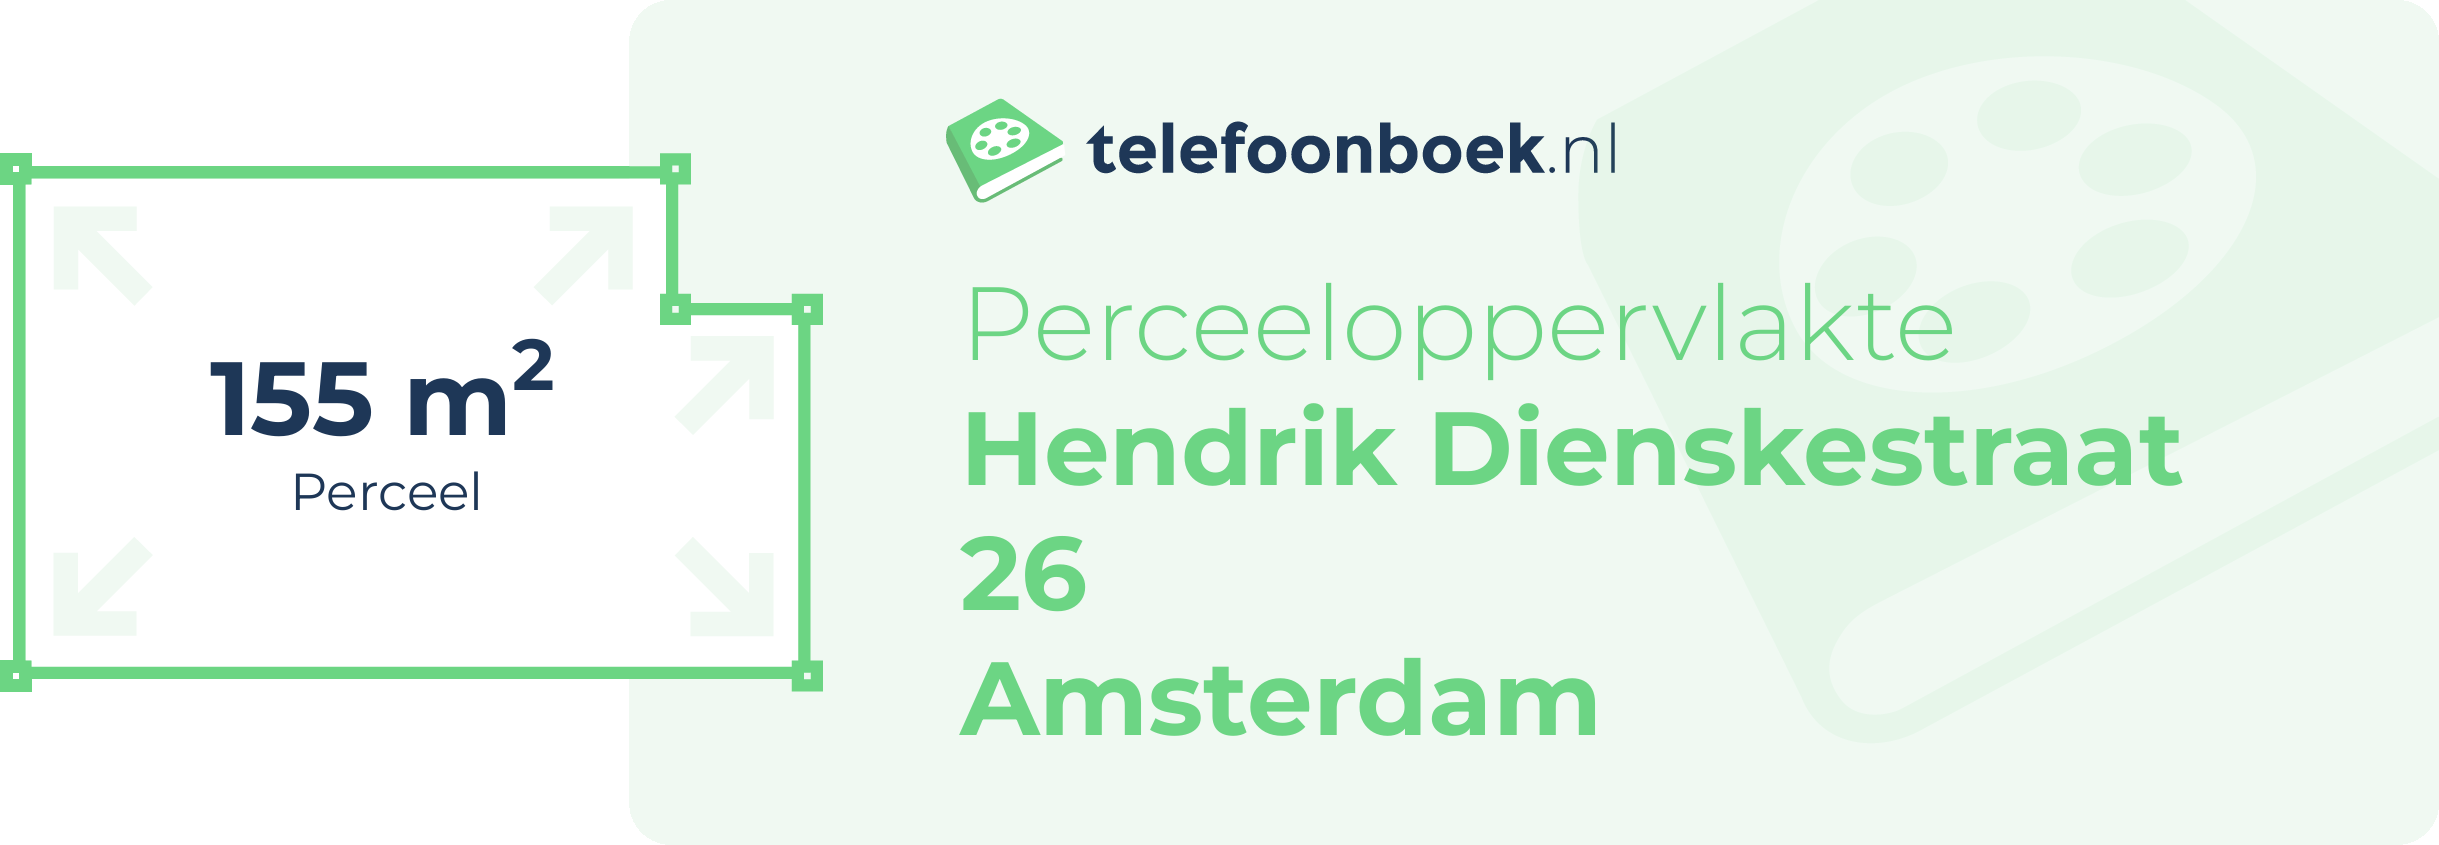 Perceeloppervlakte Hendrik Dienskestraat 26 Amsterdam